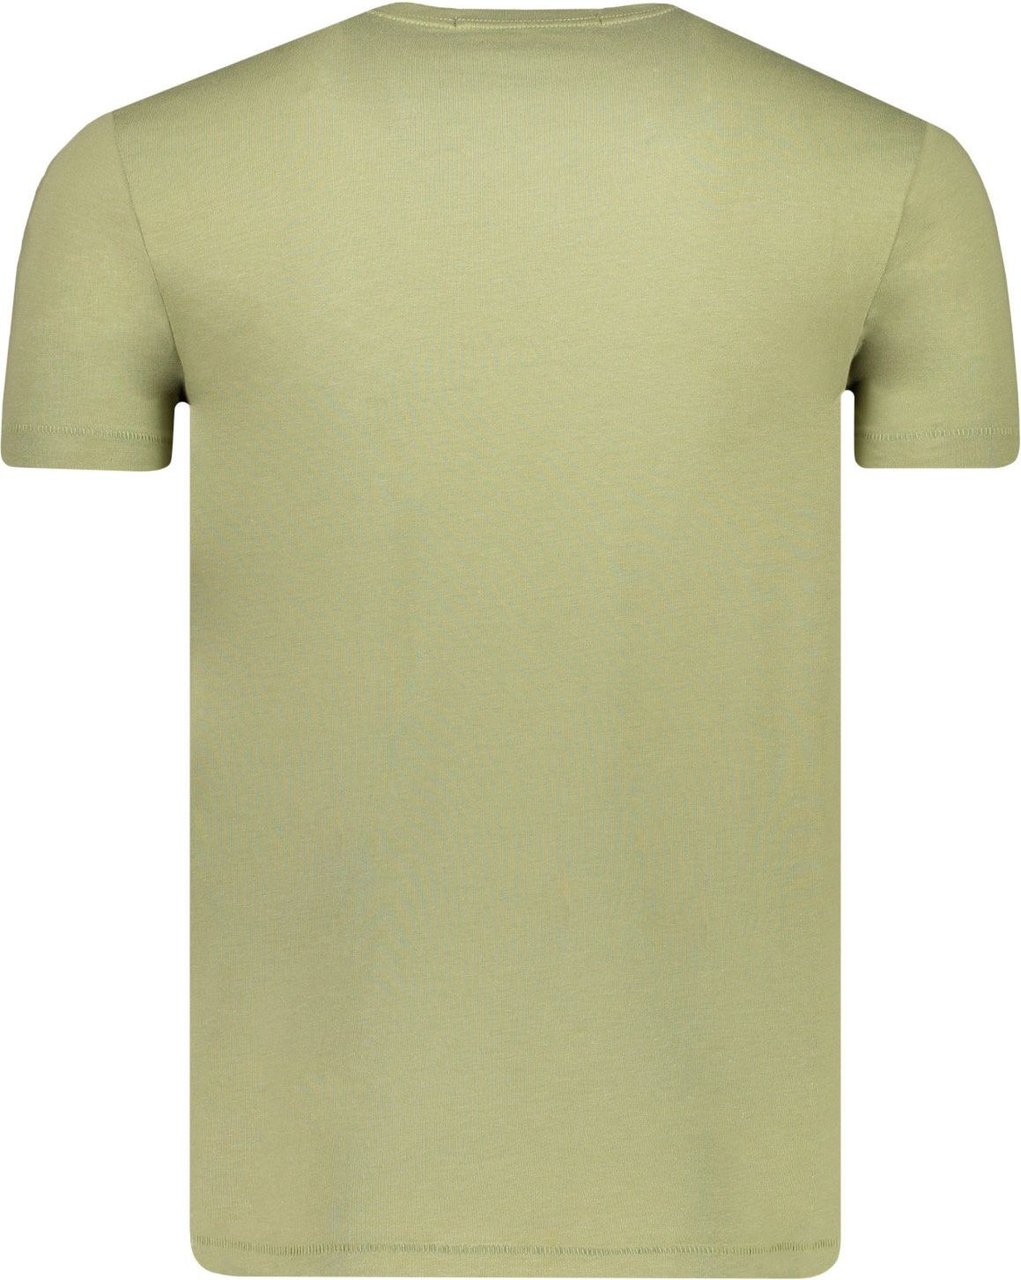 Calvin Klein T-shirt Groen Groen